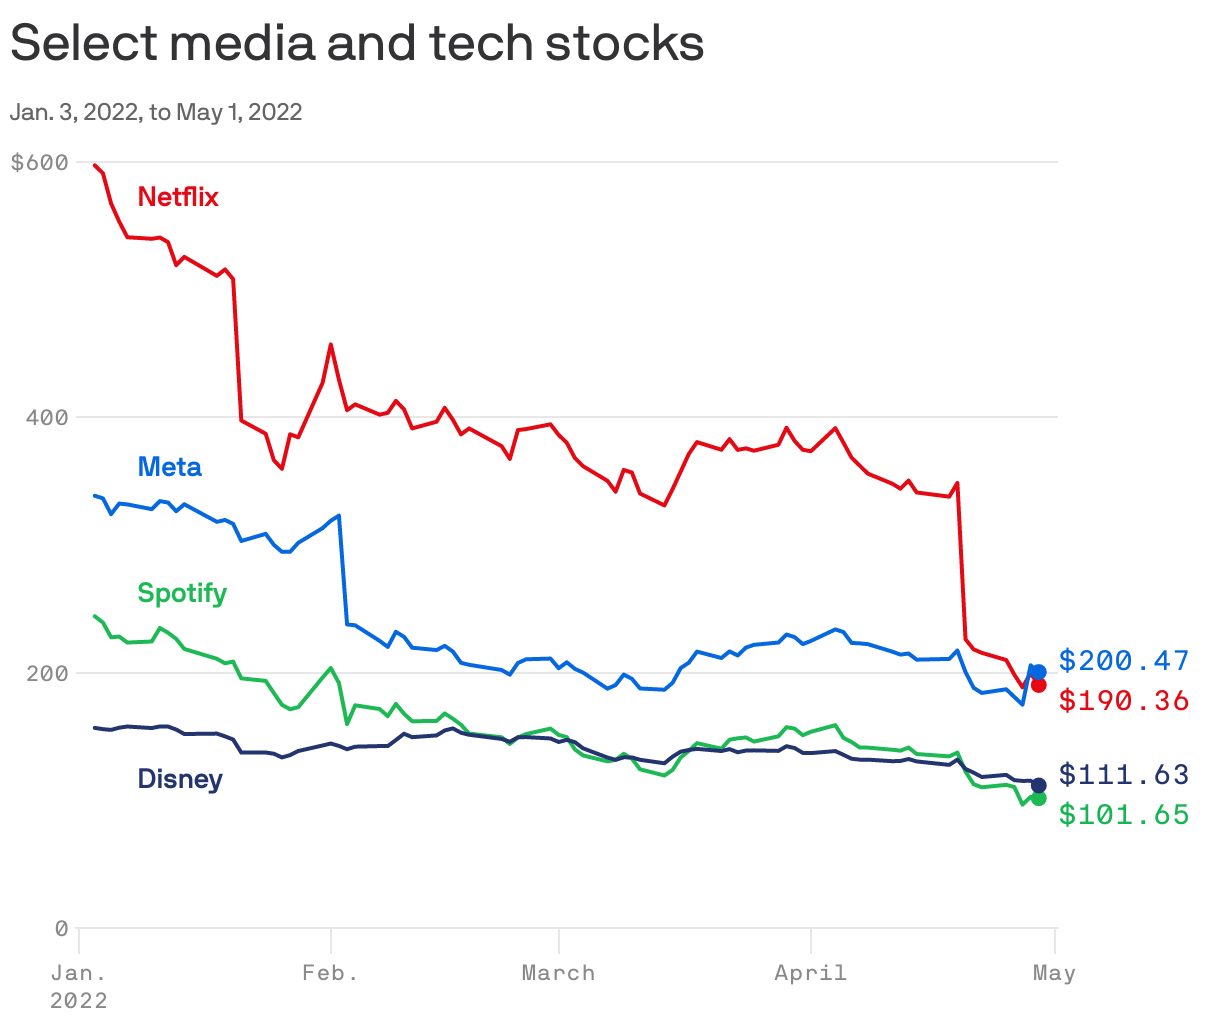 Select media and tech stocks